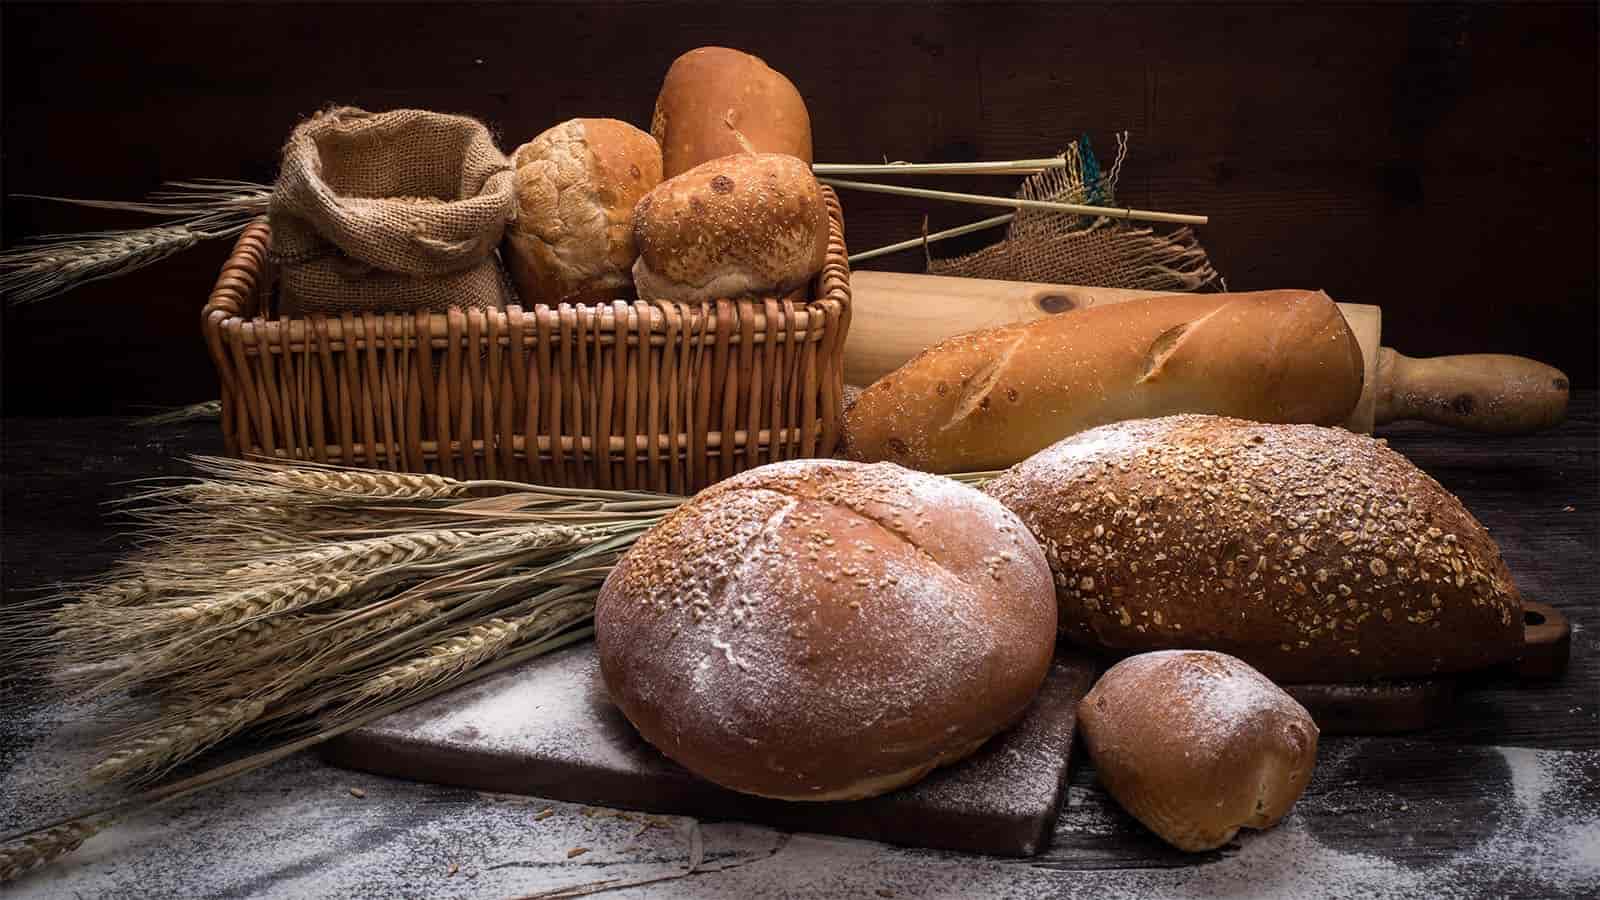 Amerika’da Dilimlenmiş Ekmek Neden Yasaklandı